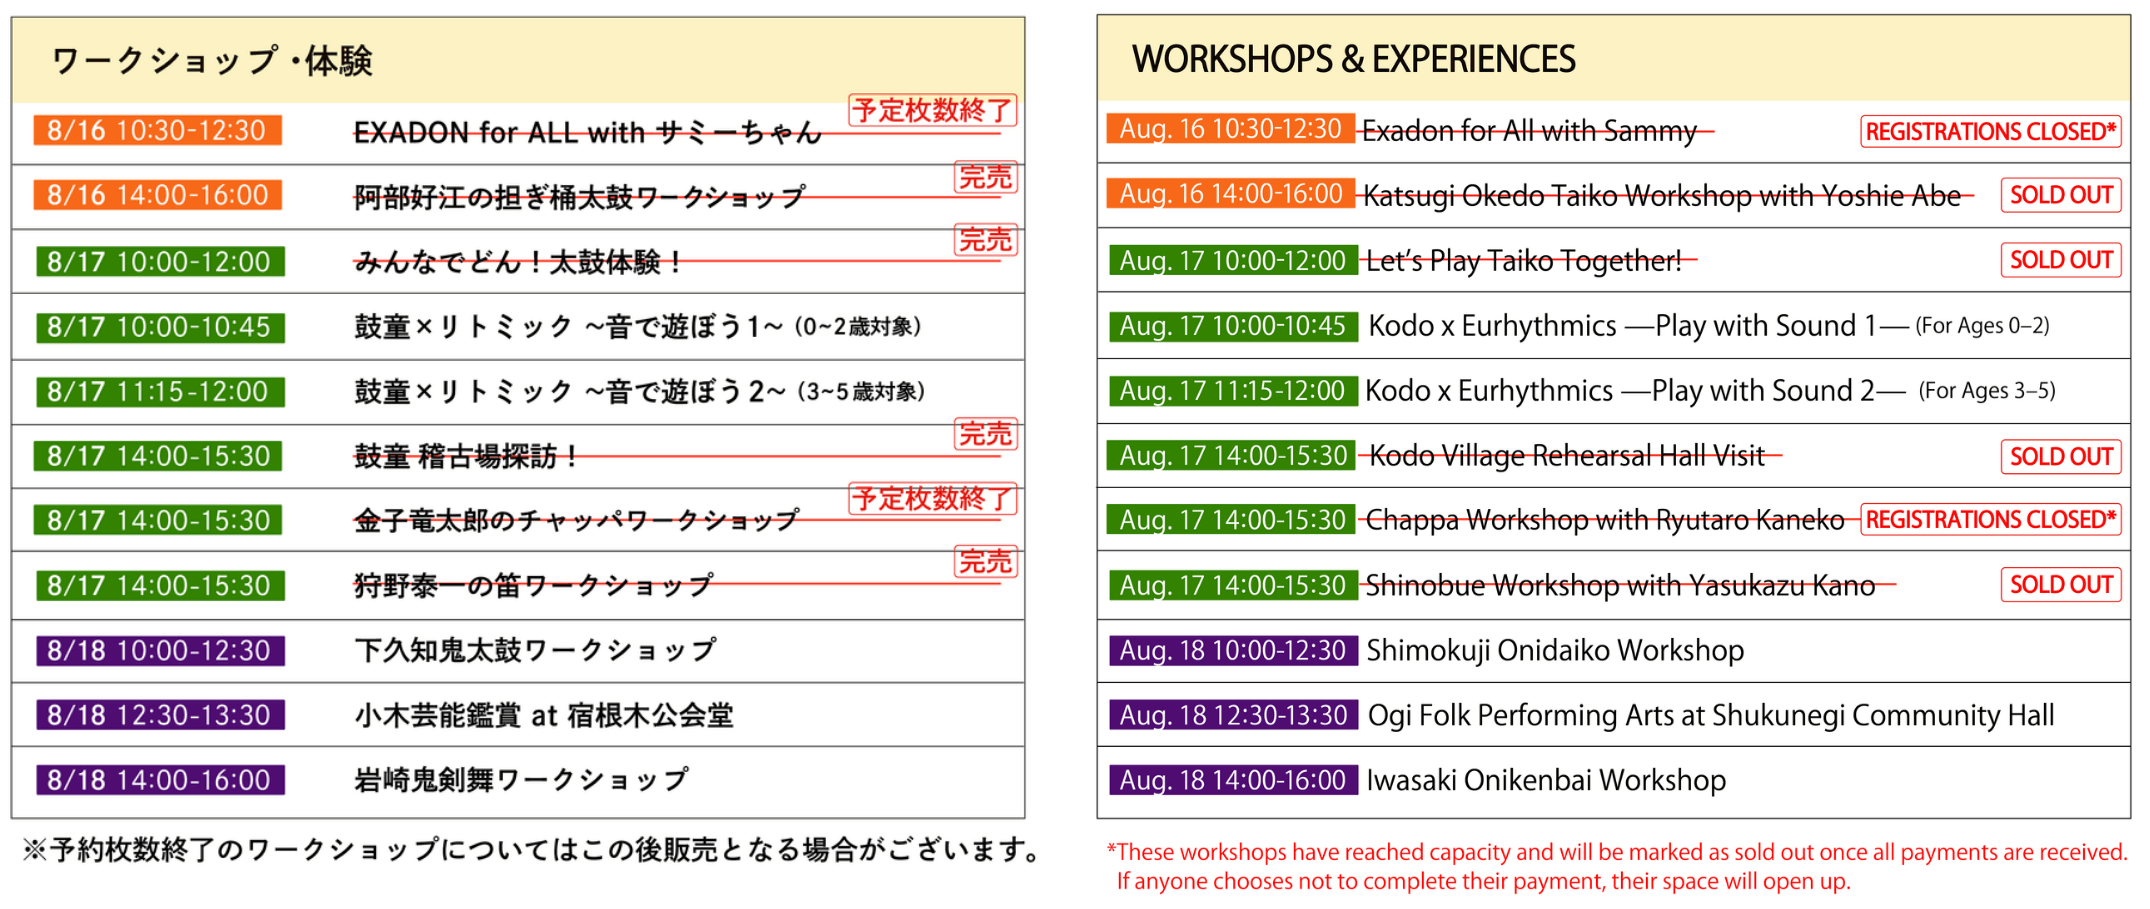 Update on Workshop Tickets